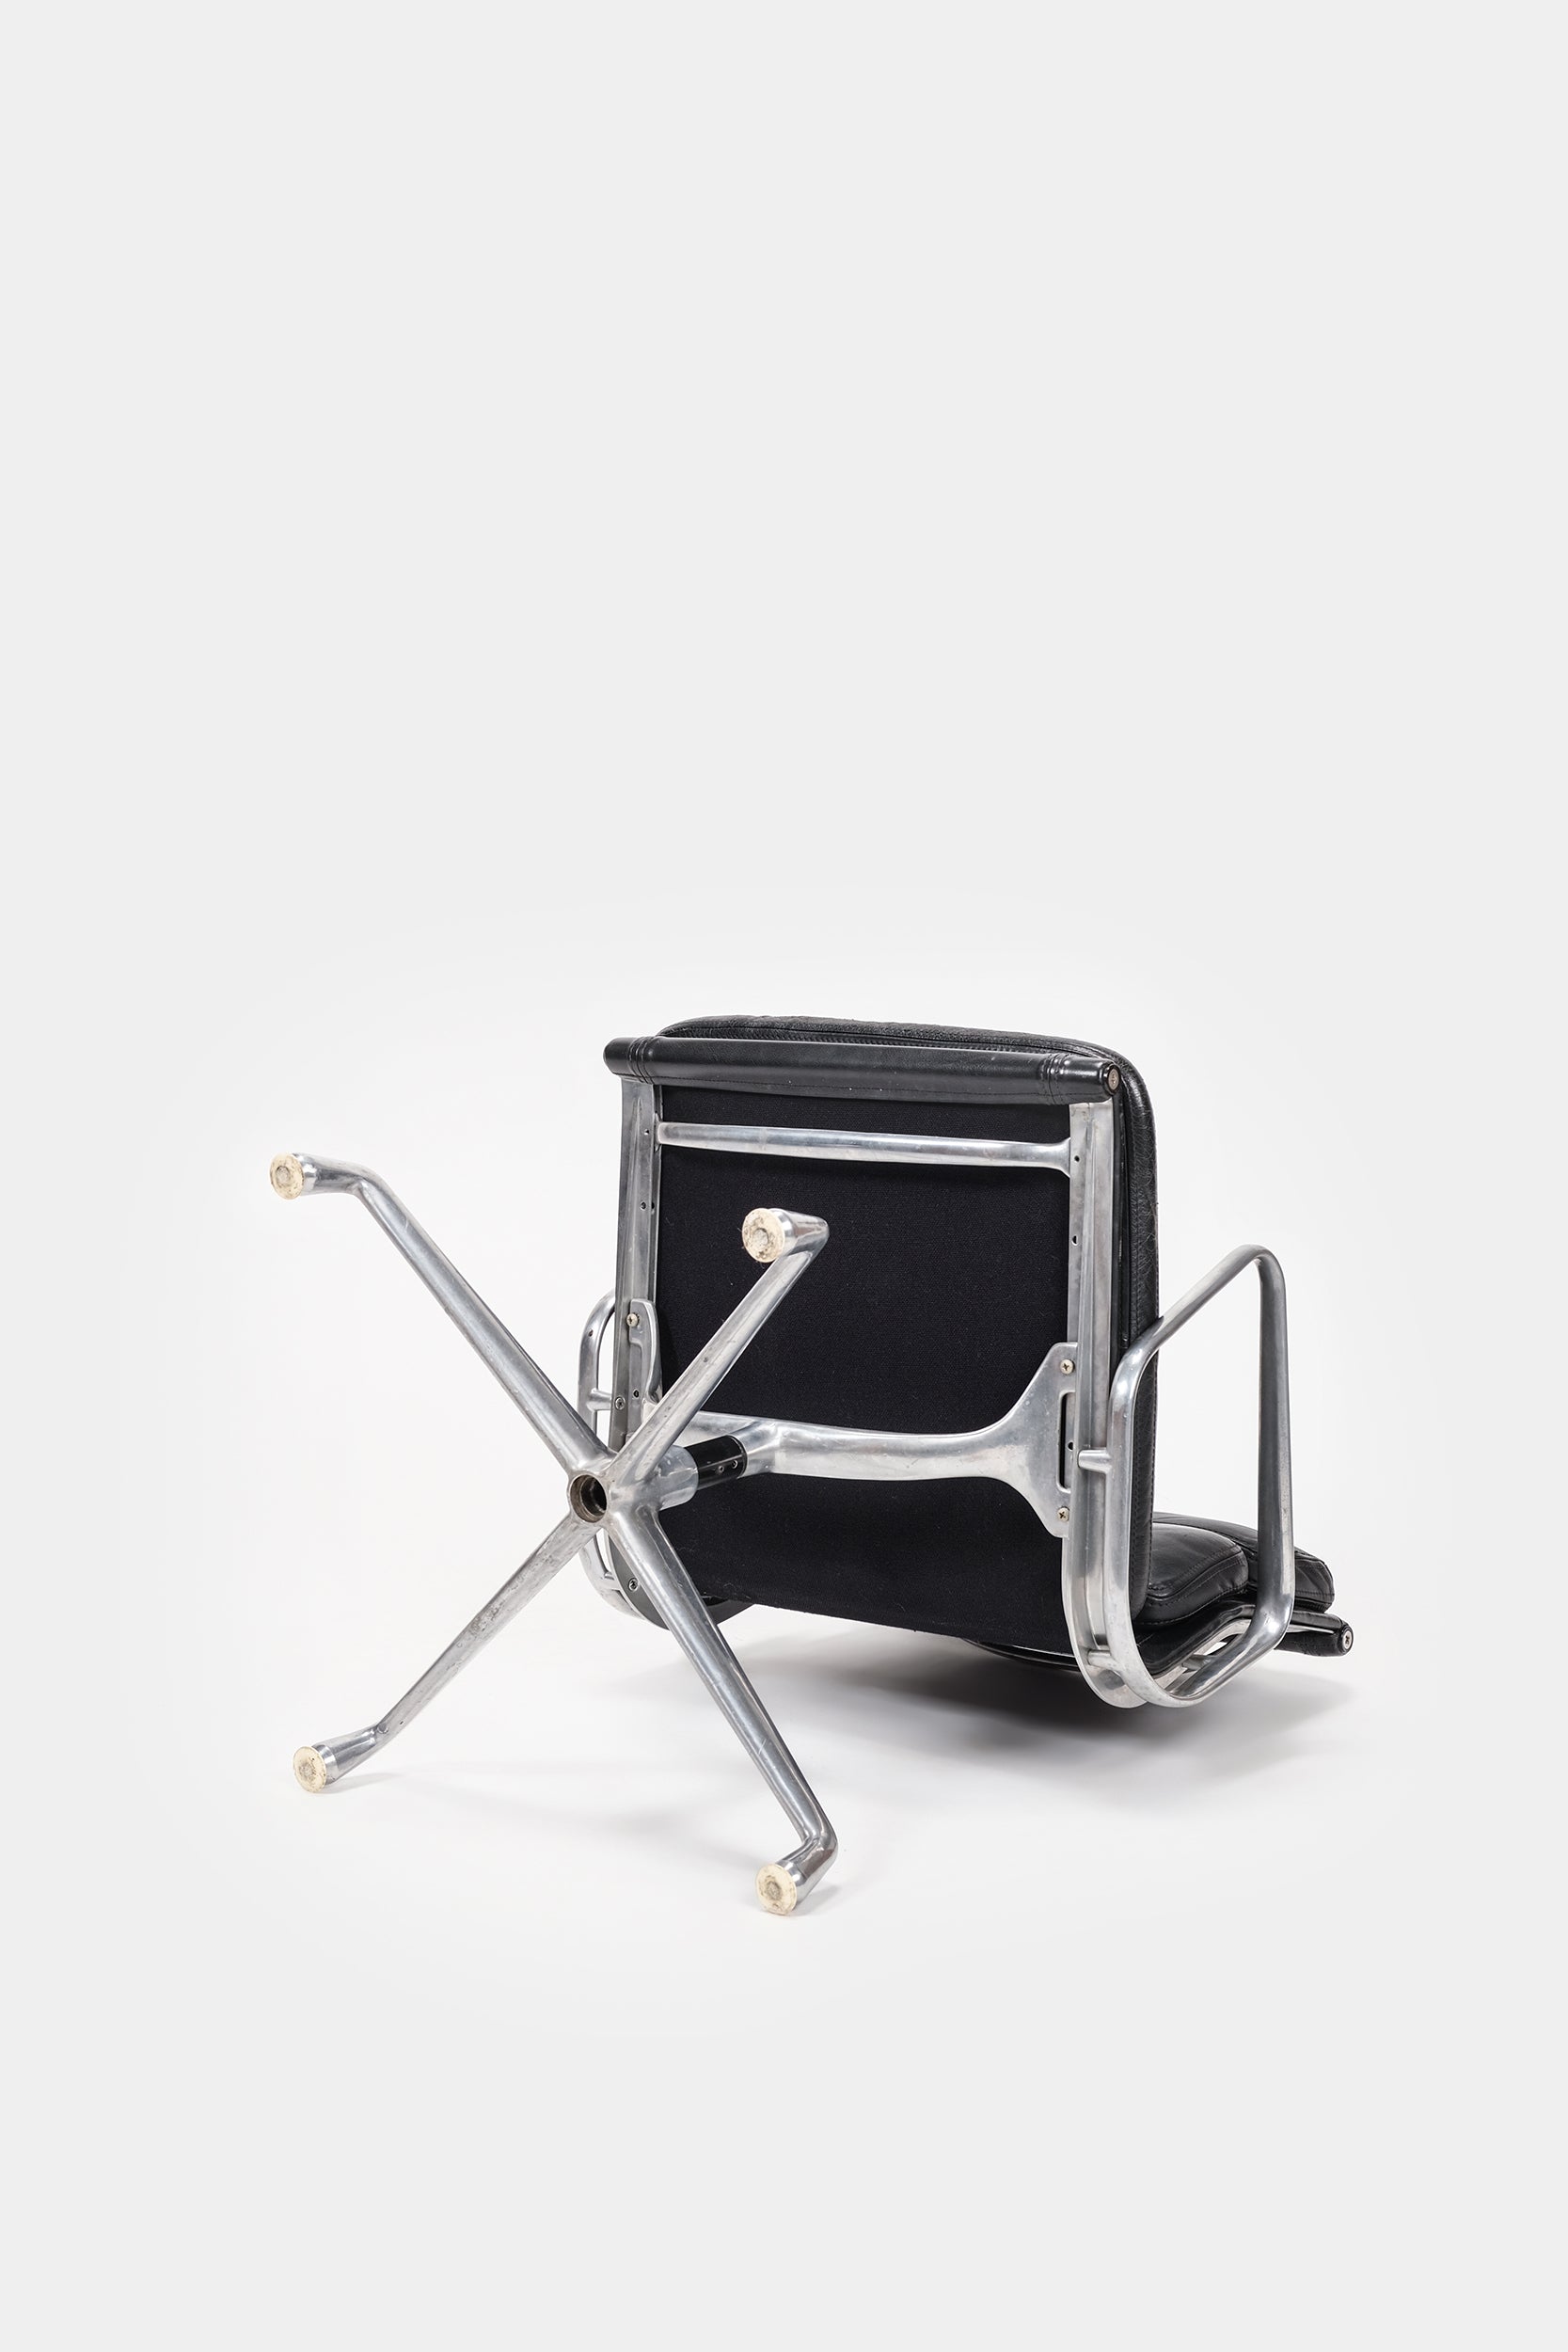 Charles Eames, EA208 Soft Pad Chair, Drehstuhl